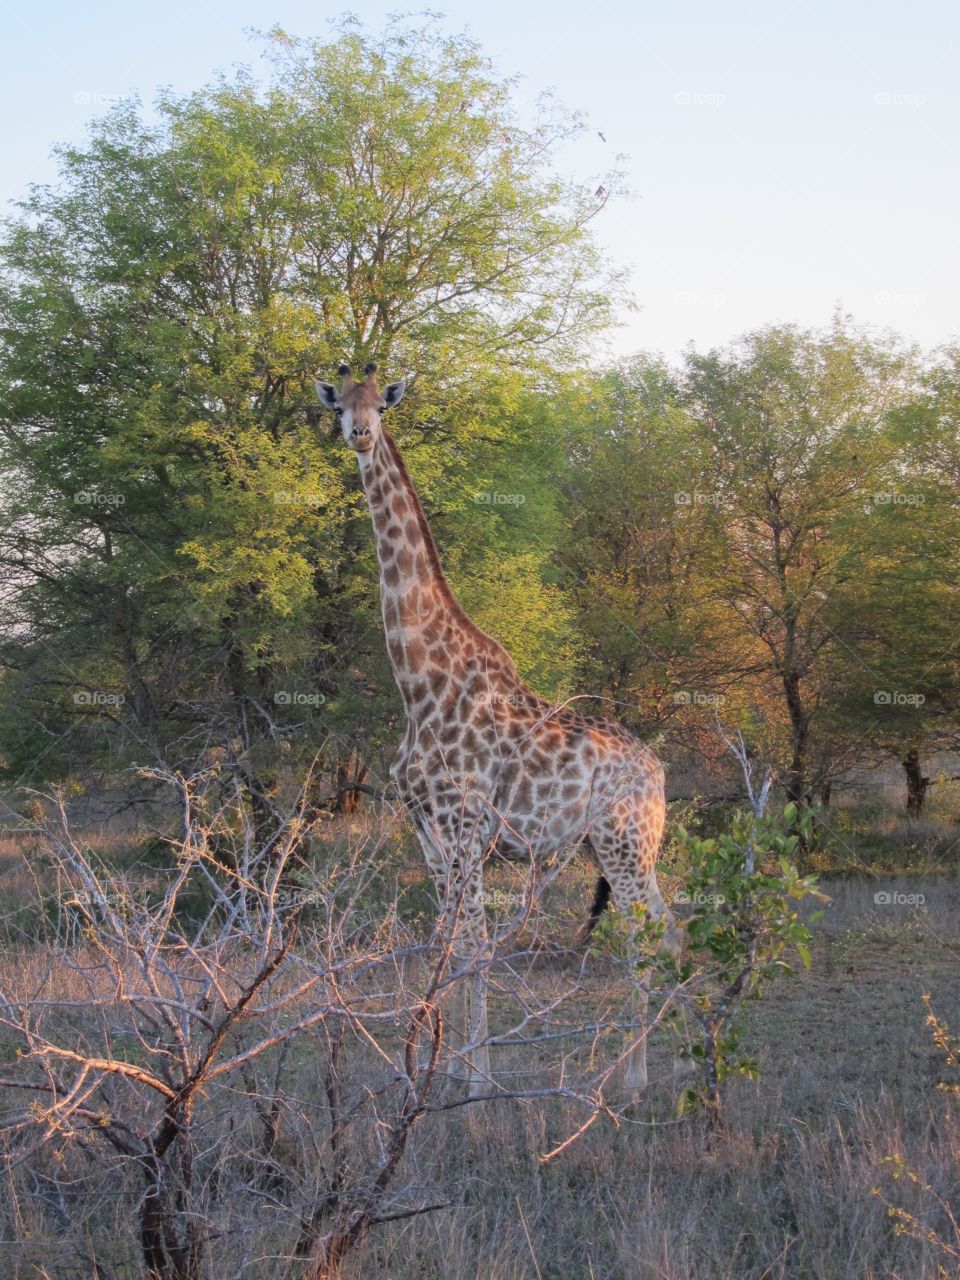 Safari, Kruger National Park, South Africa 